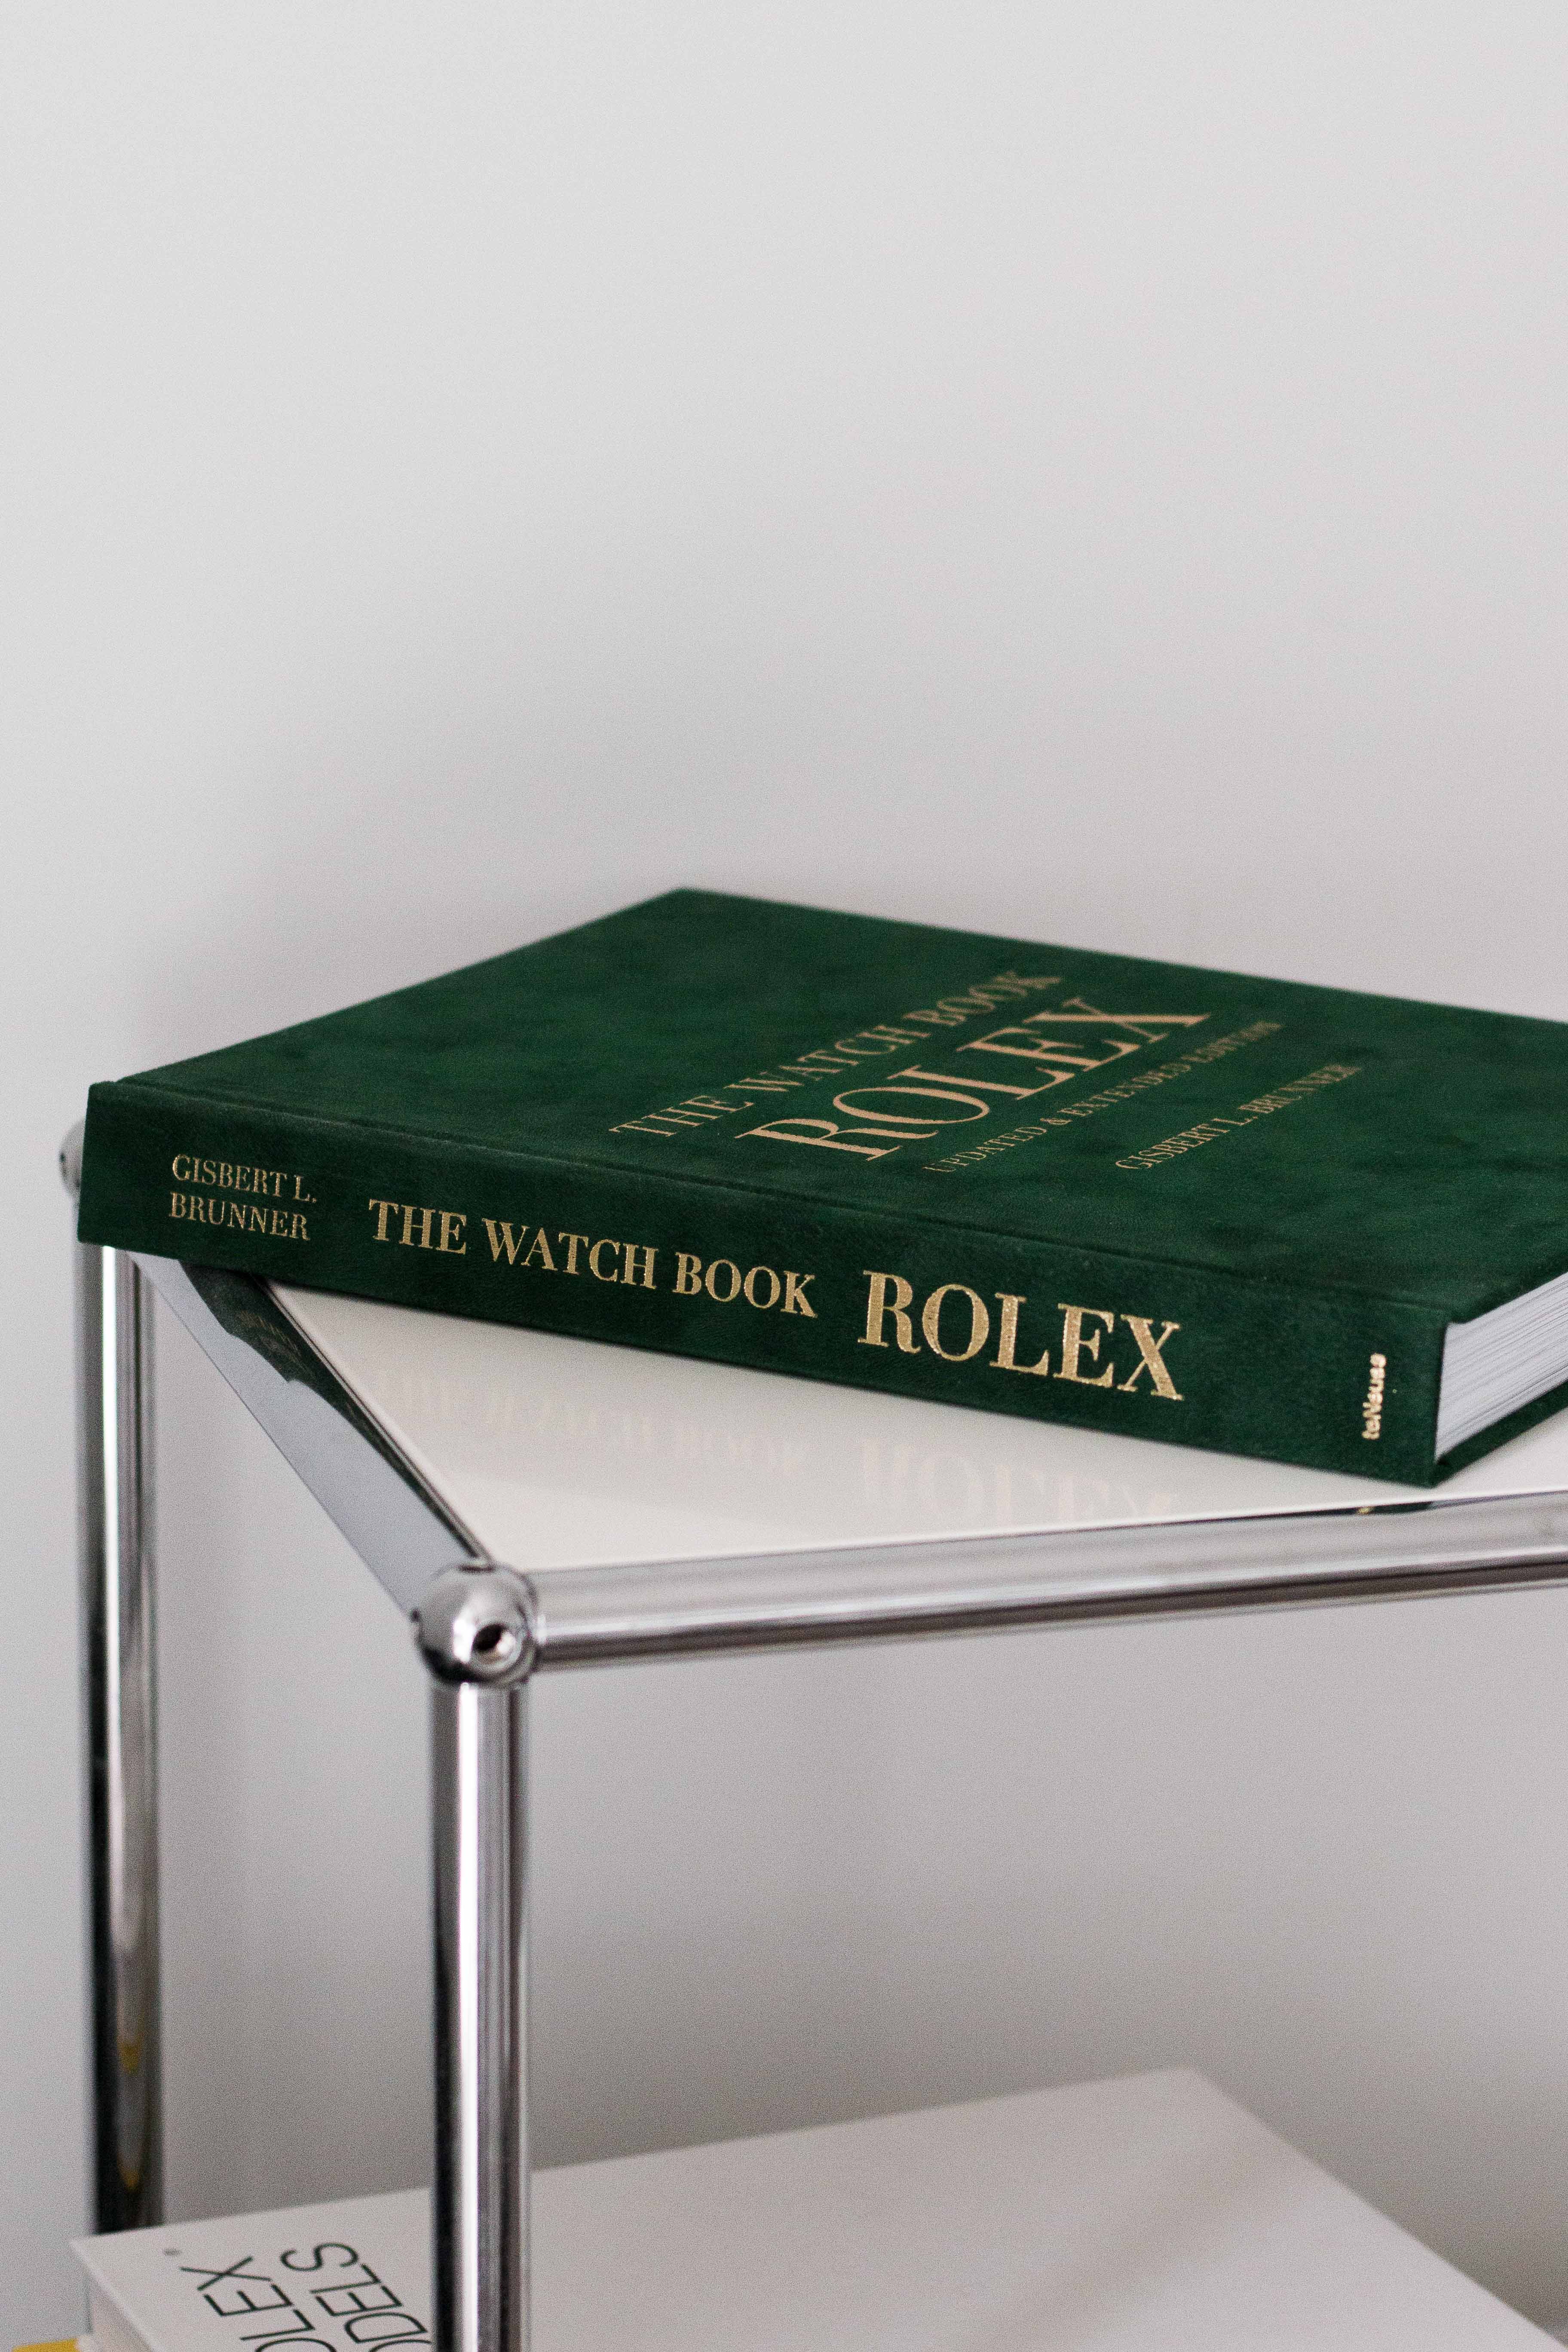 The Watch Book Rolex by Gisbert L. Brunner 